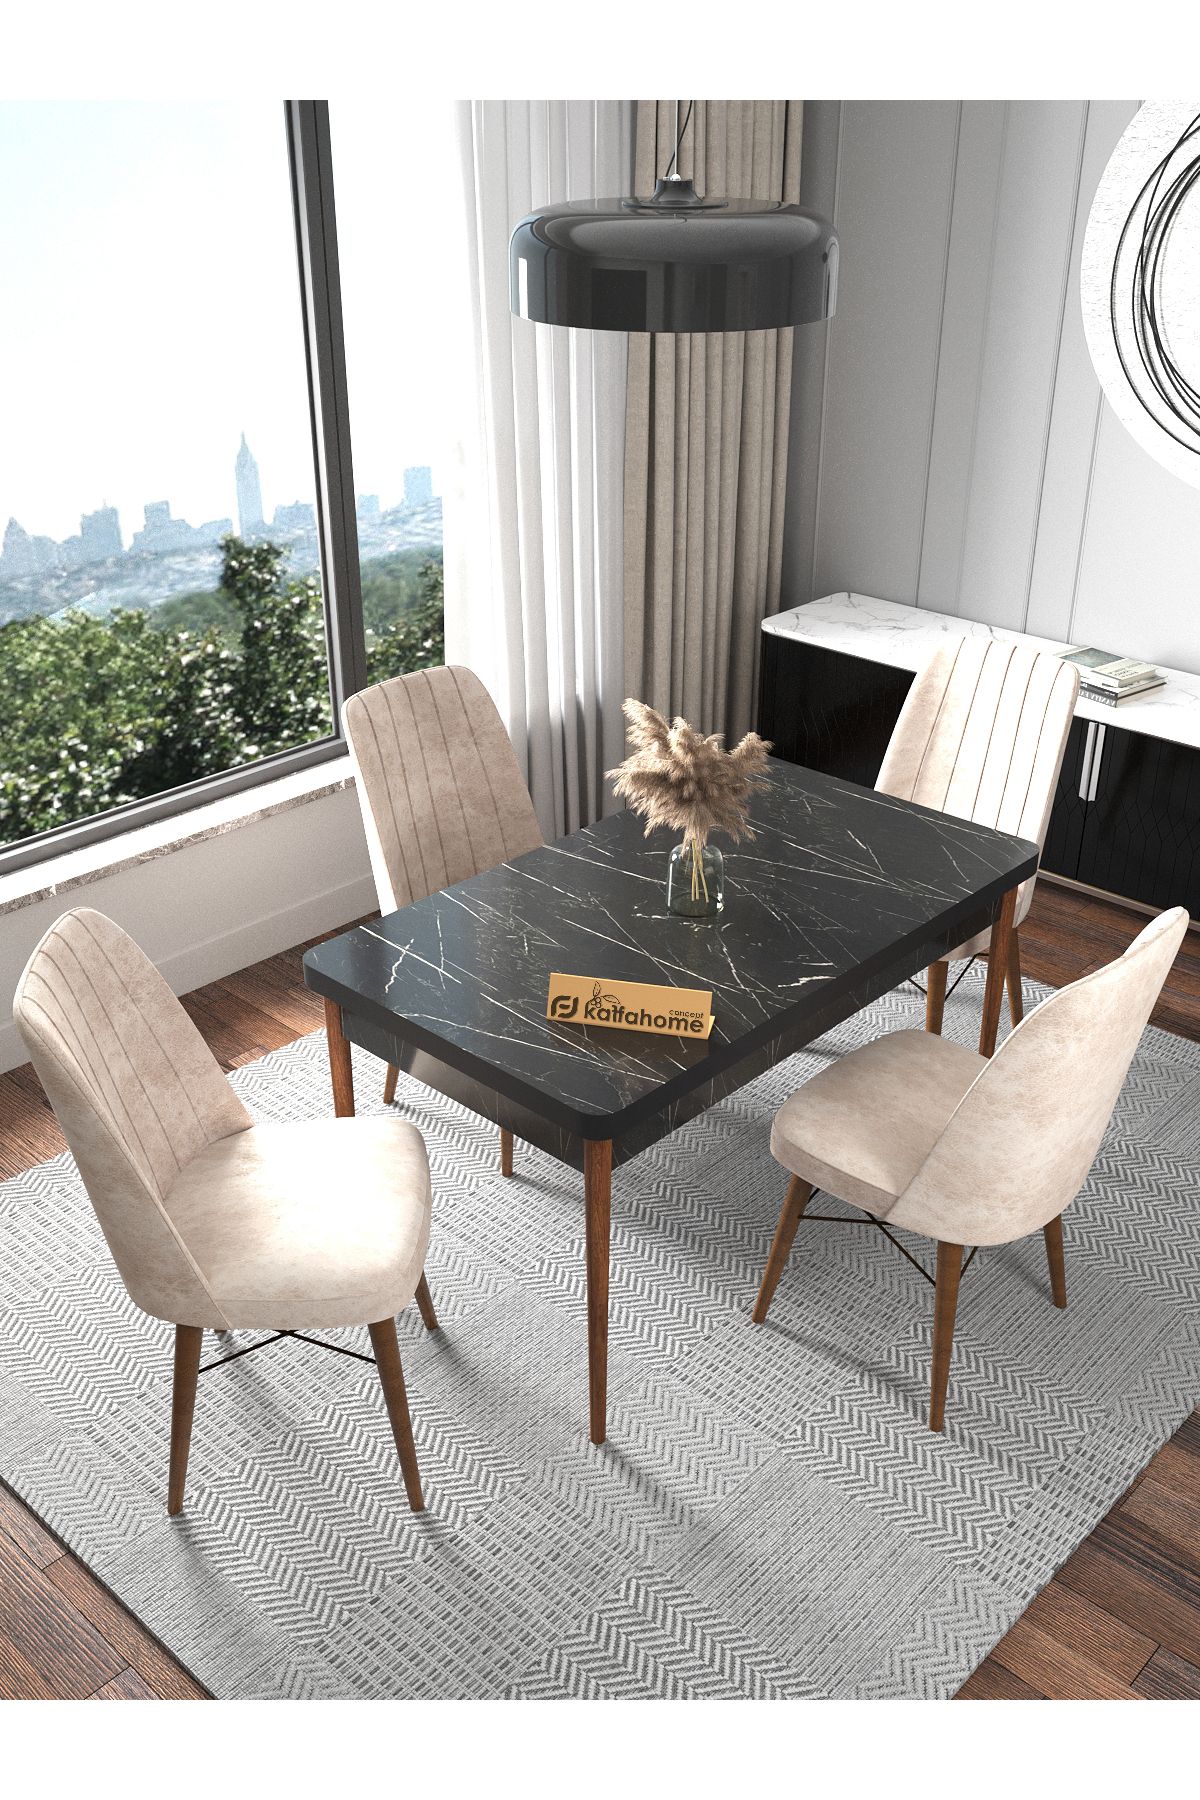 Kaffahome Fixed Siyah 70x110 Cm , 4 Kişilik Sabit Mutfak Masası , Mutfak Sandalye Takımı - Krem